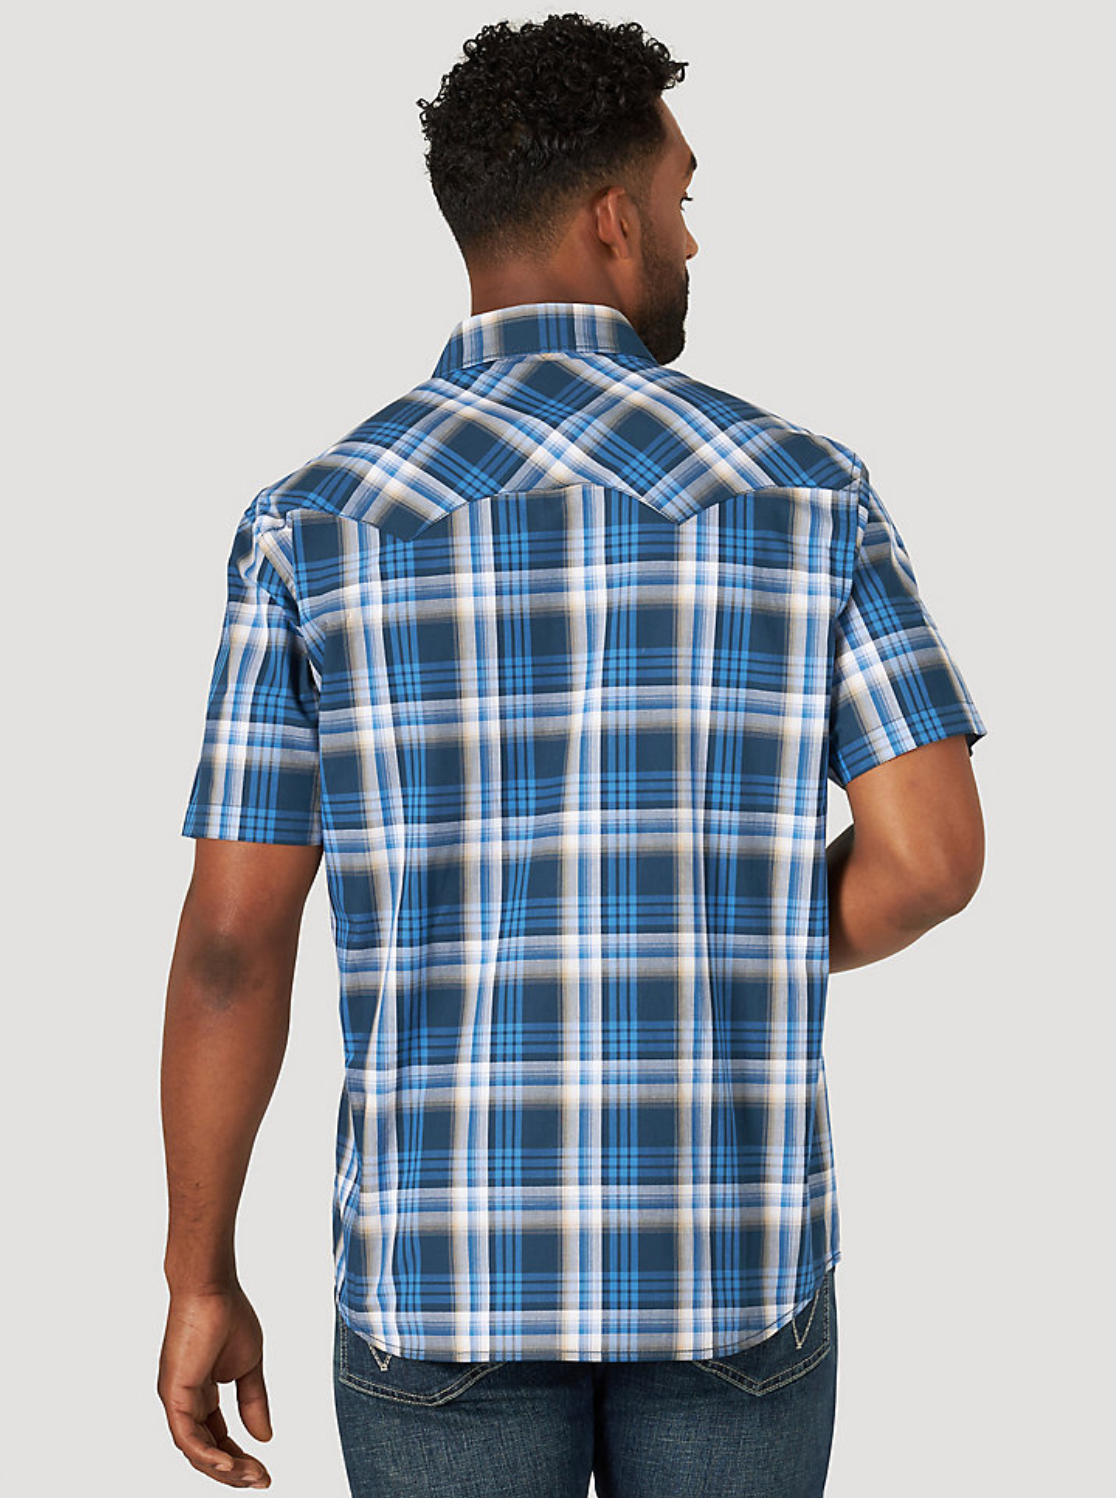 
                  
                    10MV4029B - Wrangler Men's Wrangler Retro® Pearl Snap Shirt
                  
                